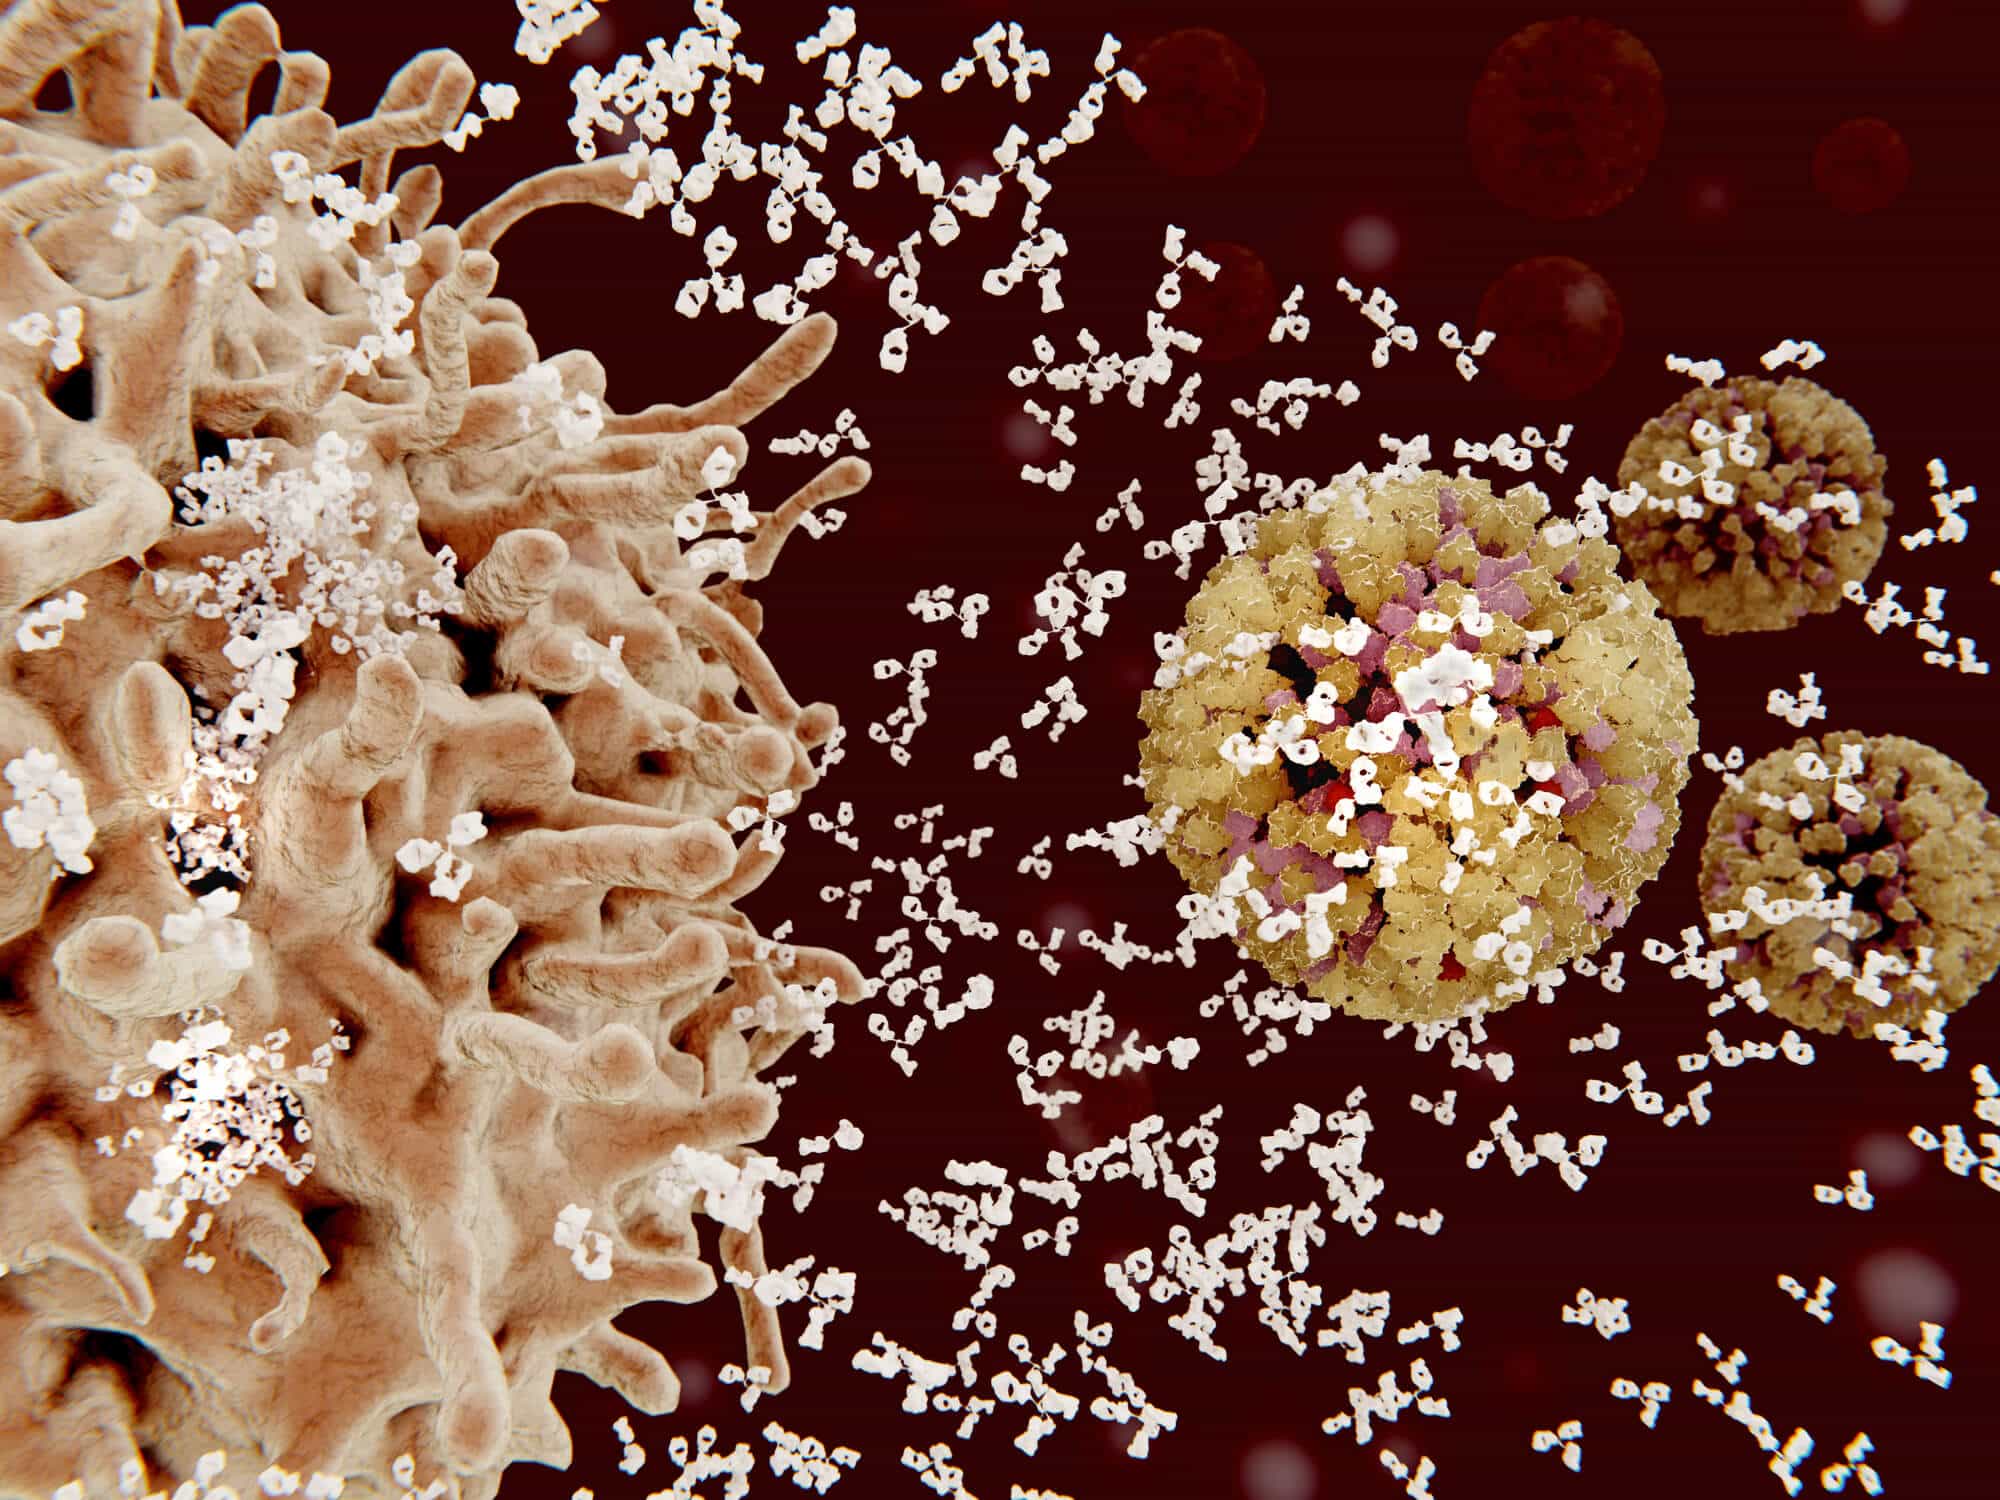 תאי פלסמה - תאי B של מערכת החיסון תוקפים נגיפים. <a href="https://depositphotos.com. ">המחשה: depositphotos.com</a>